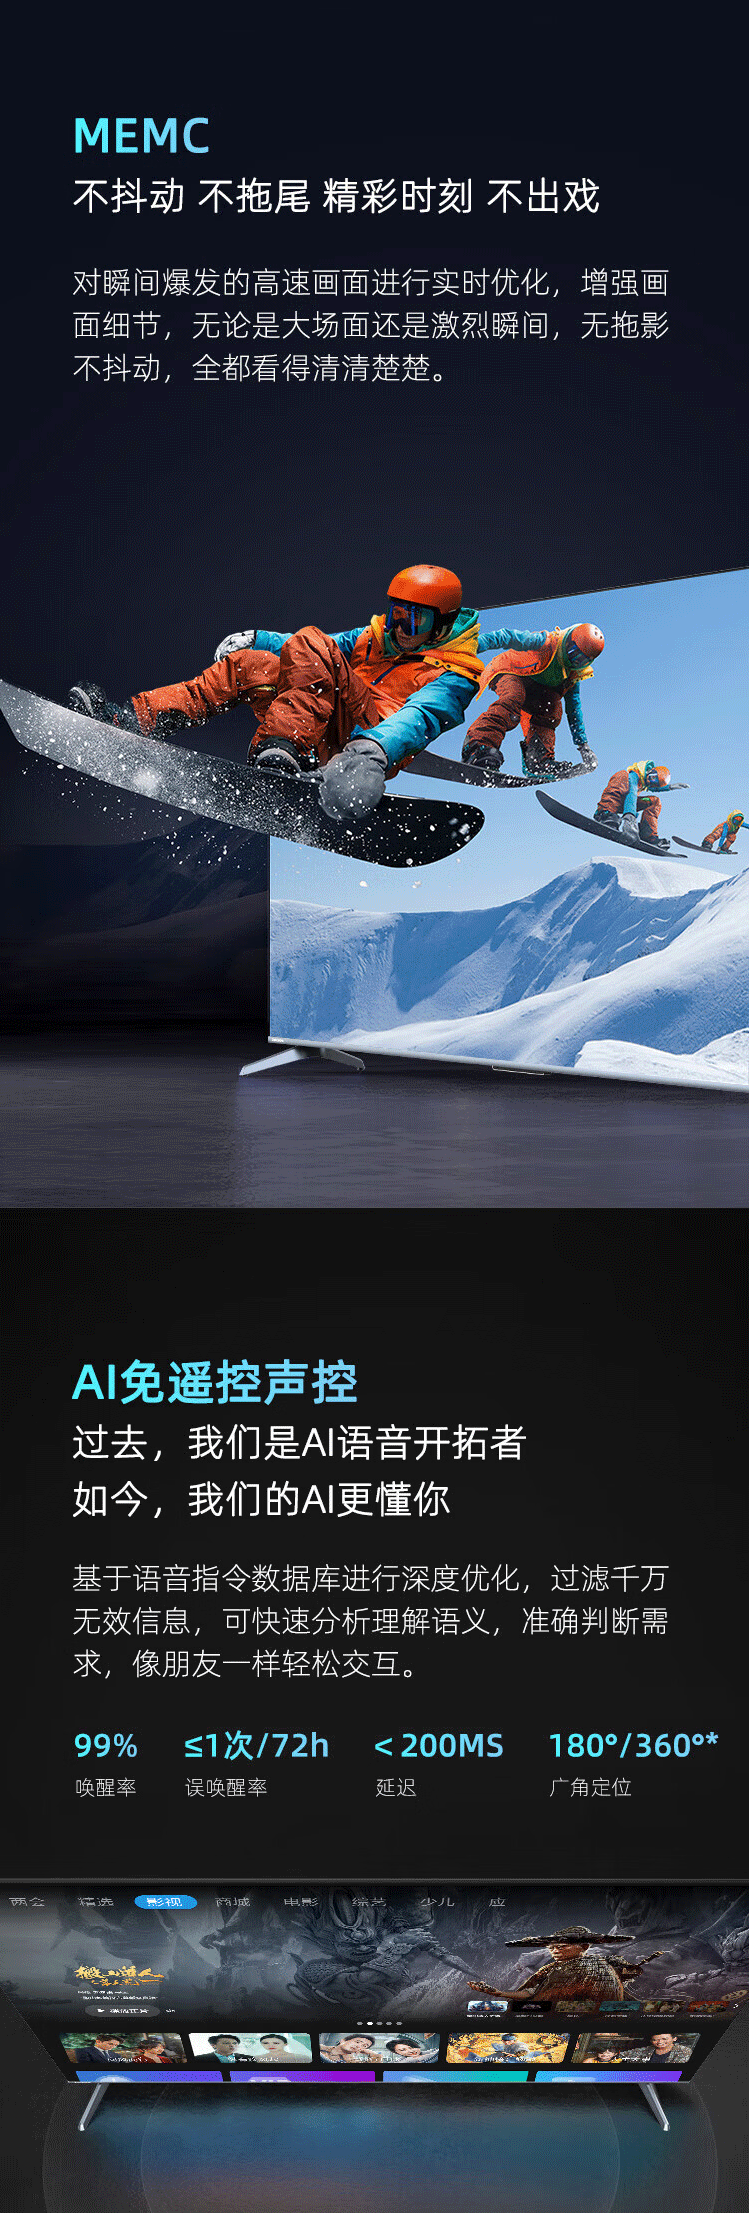 长虹/CHANGHONG 65英寸120Hz高刷 65D 4K平板液晶LED电视机